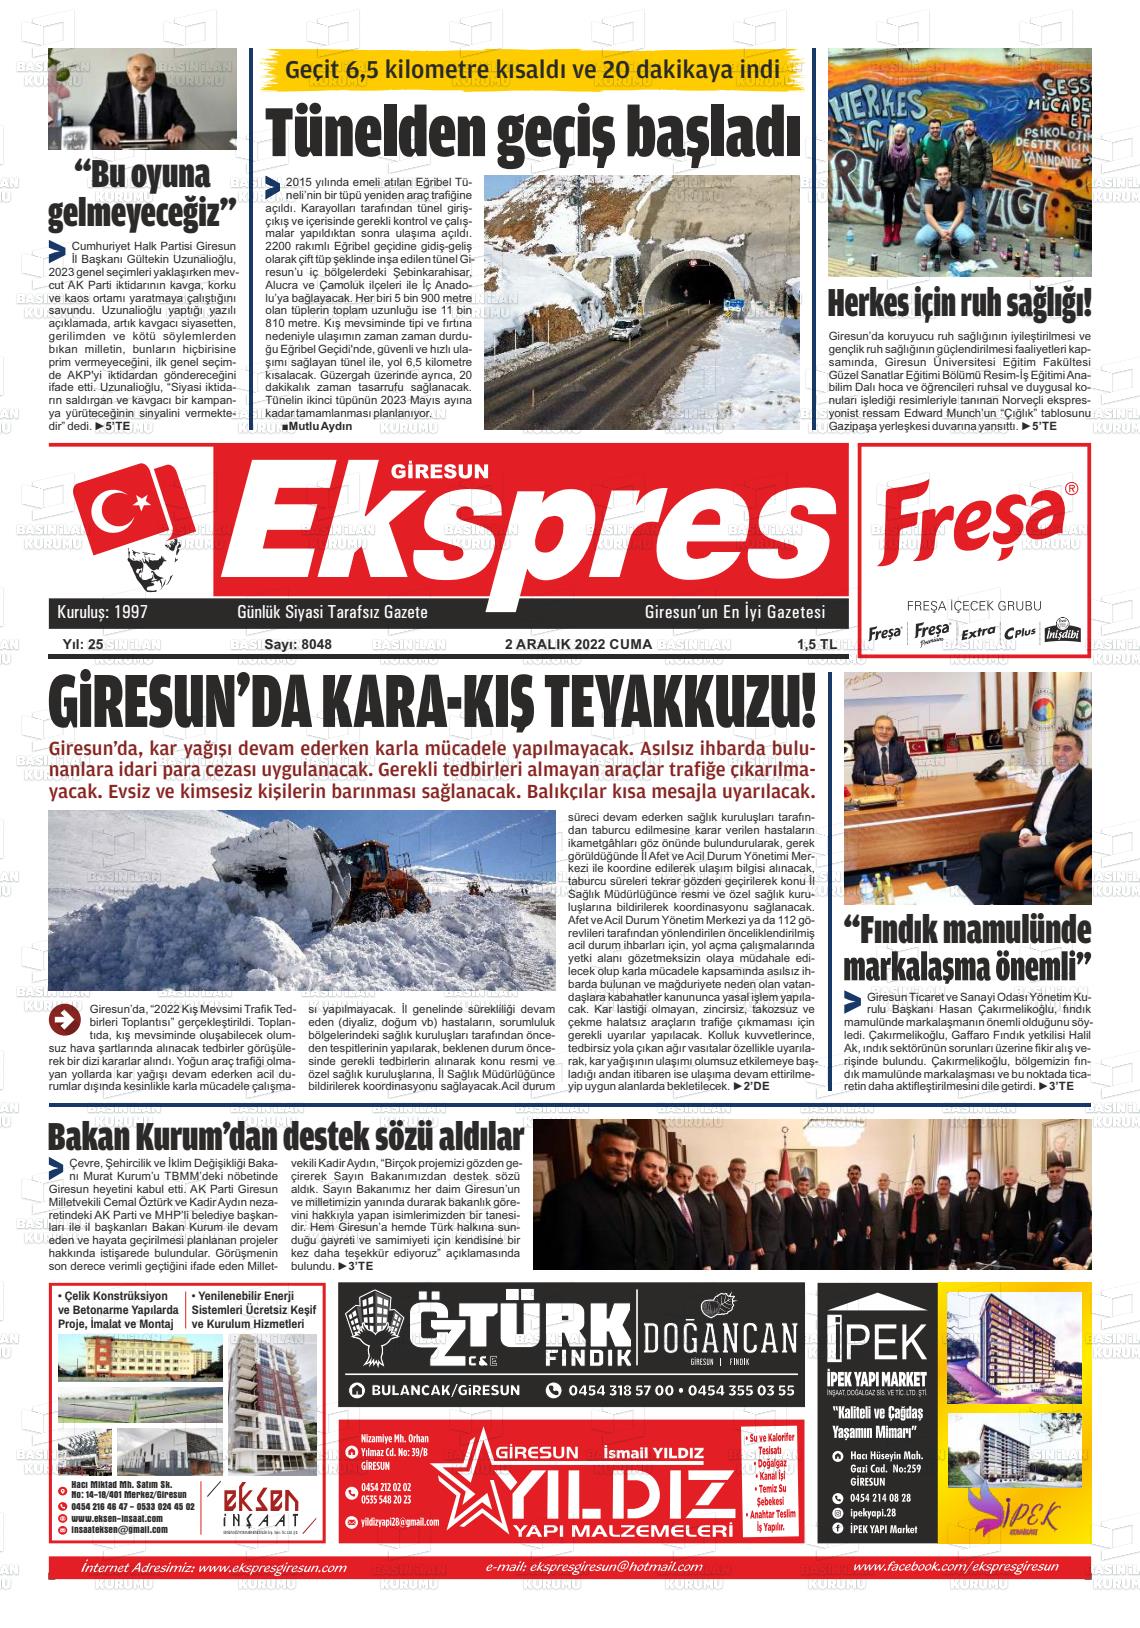 02 Aralık 2022 Giresun Ekspres Gazete Manşeti